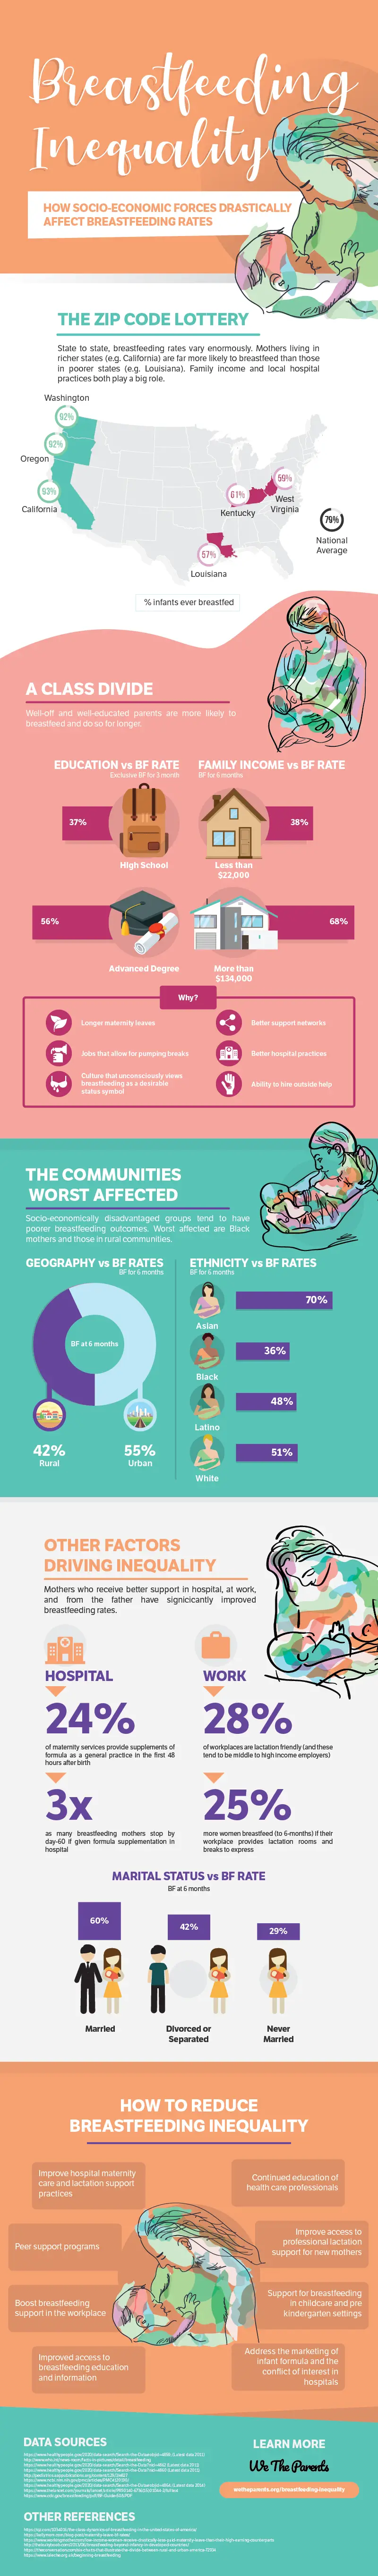 Breastfeeding Inequality Infographic